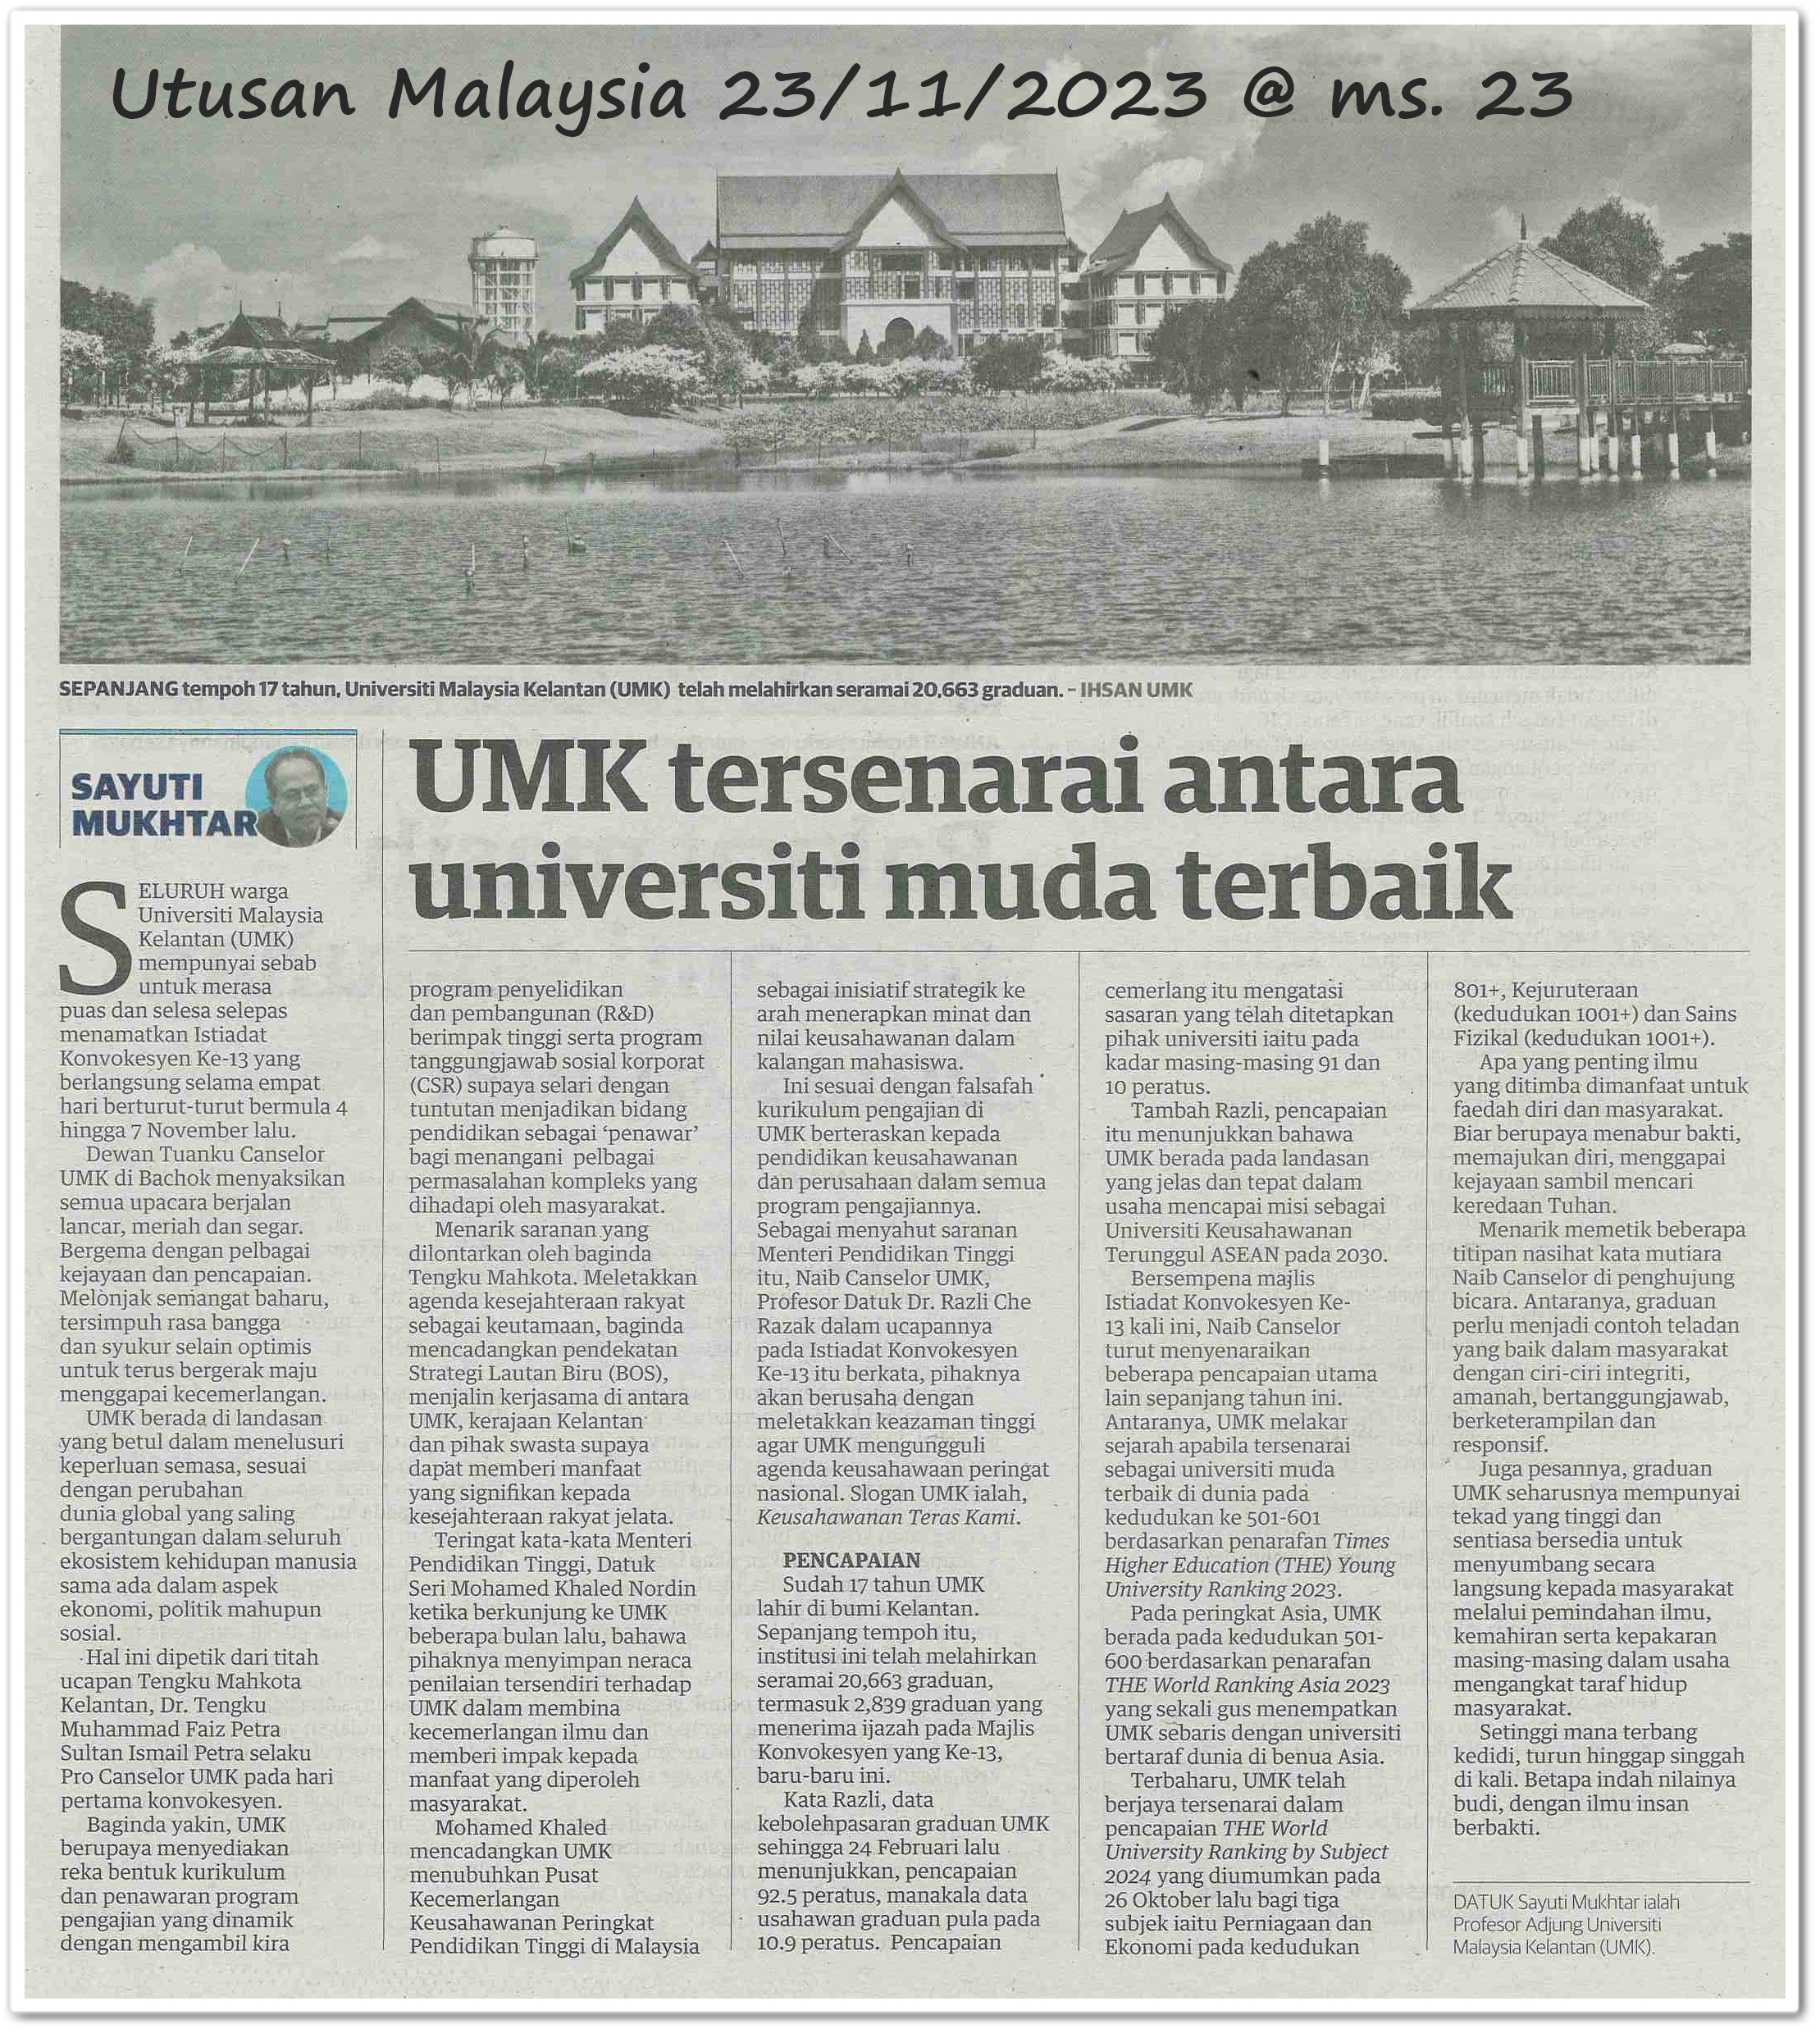 UMK tersenarai antara universiti muda terbaik - Keratan akhbar Utusan Malaysia 23 November 2023